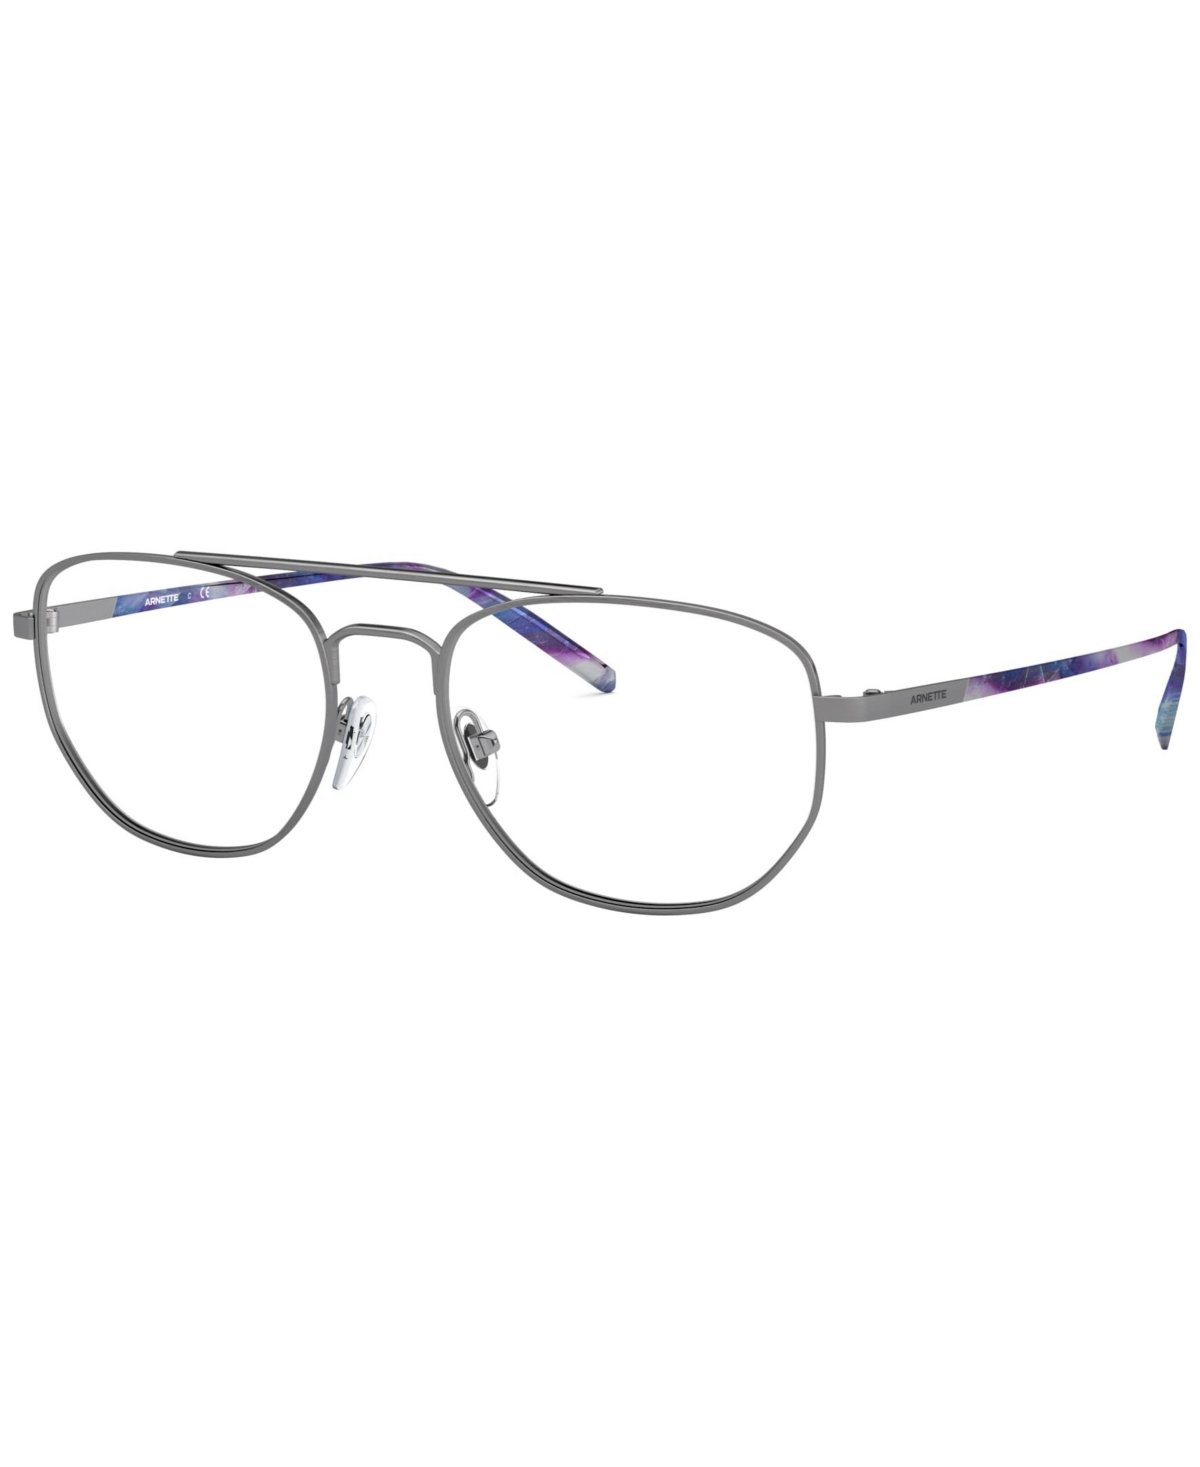 Arnette AN612554-o Men's Irregular Eyeglasses